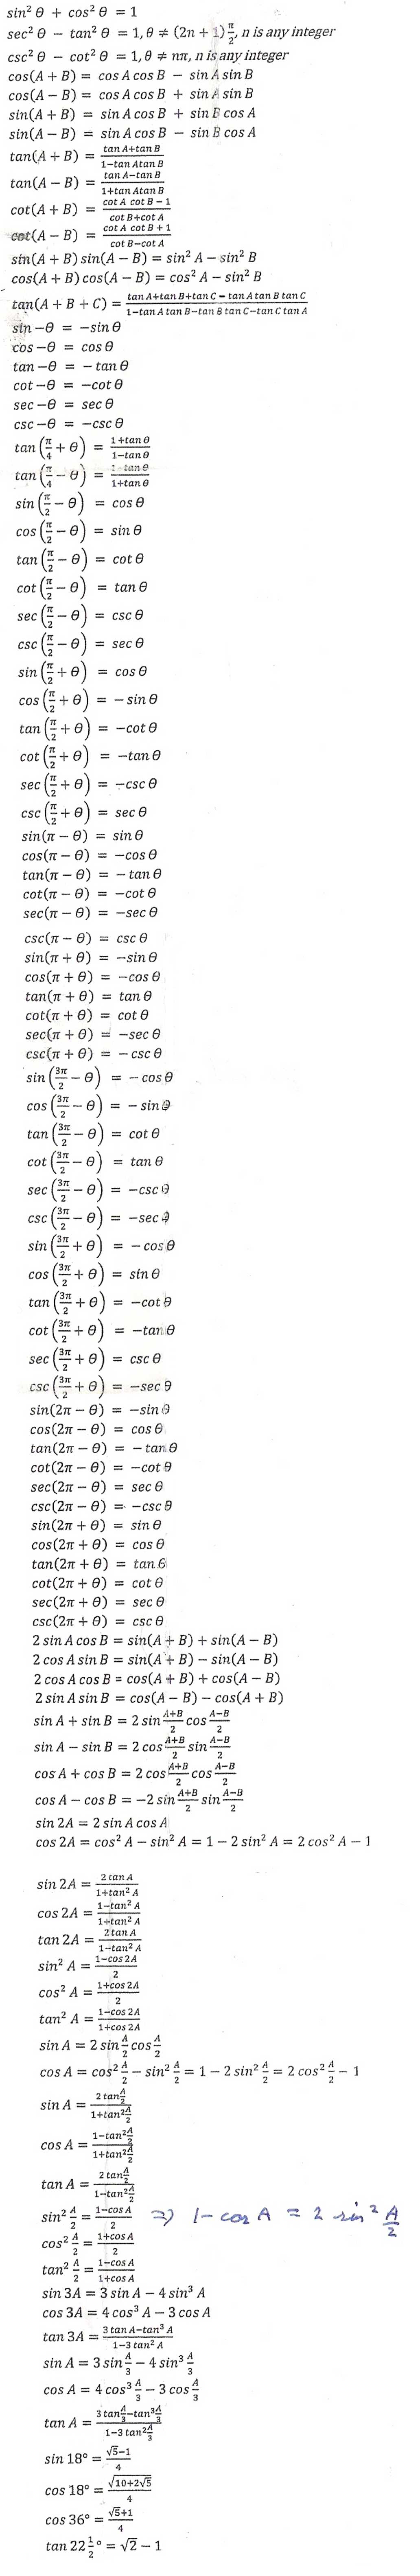 trigonometry_formulas